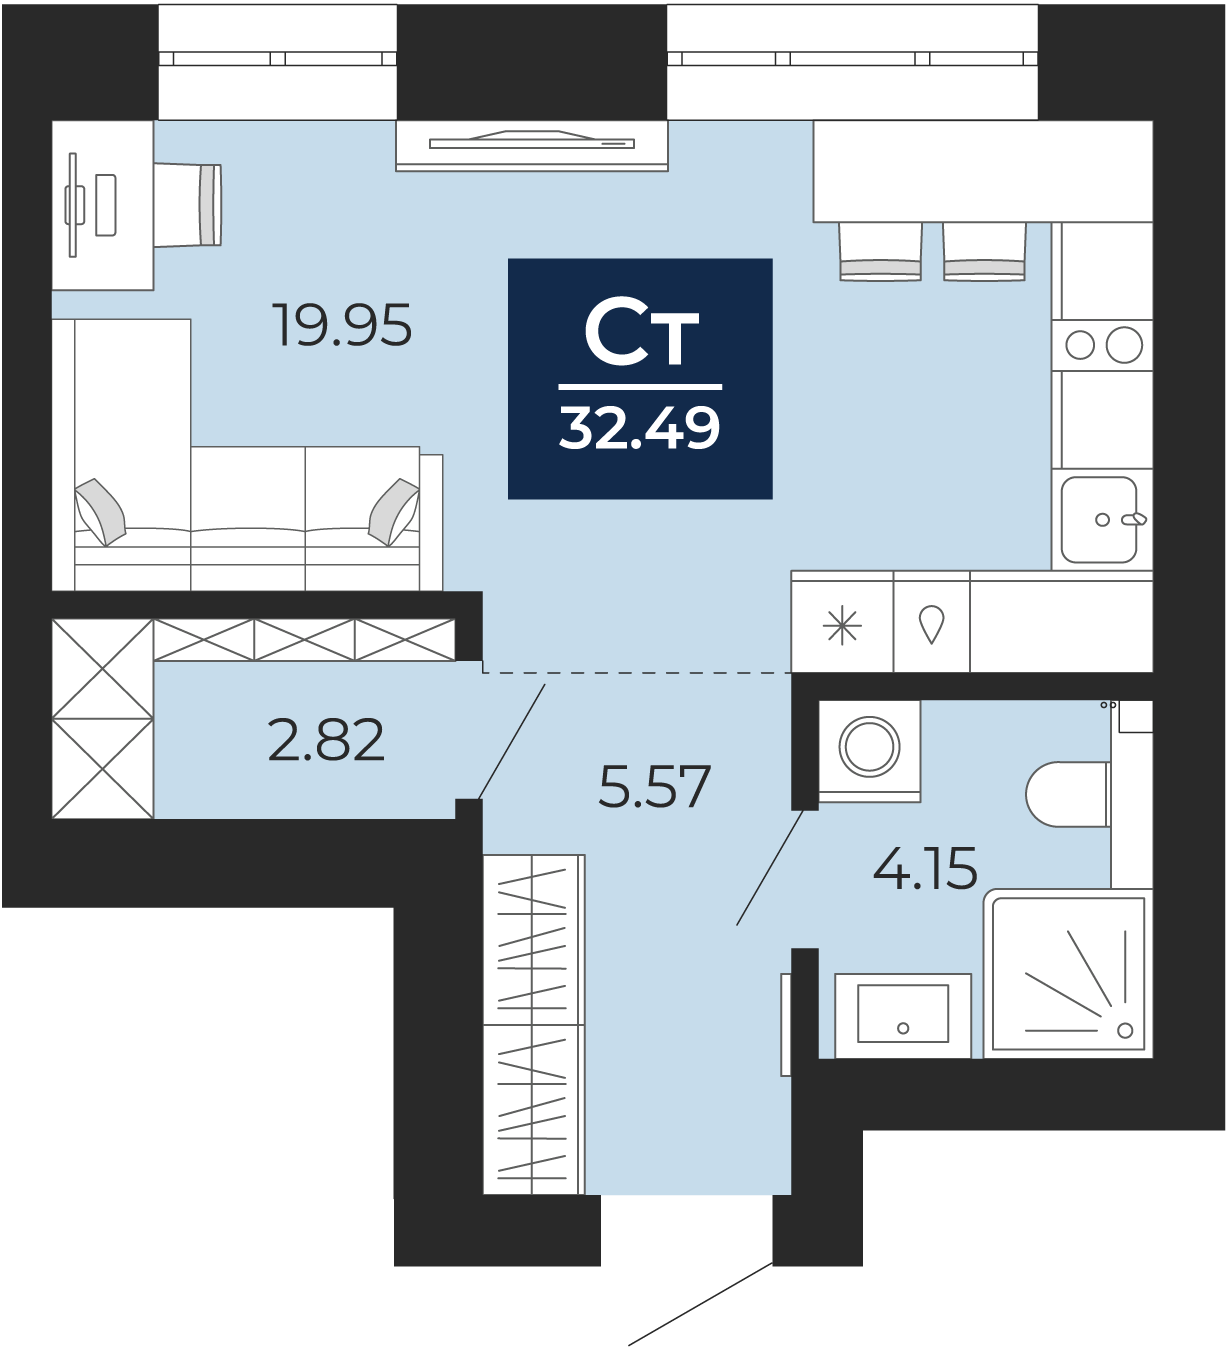 Квартира № 40, Студия, 32.49 кв. м, 7 этаж